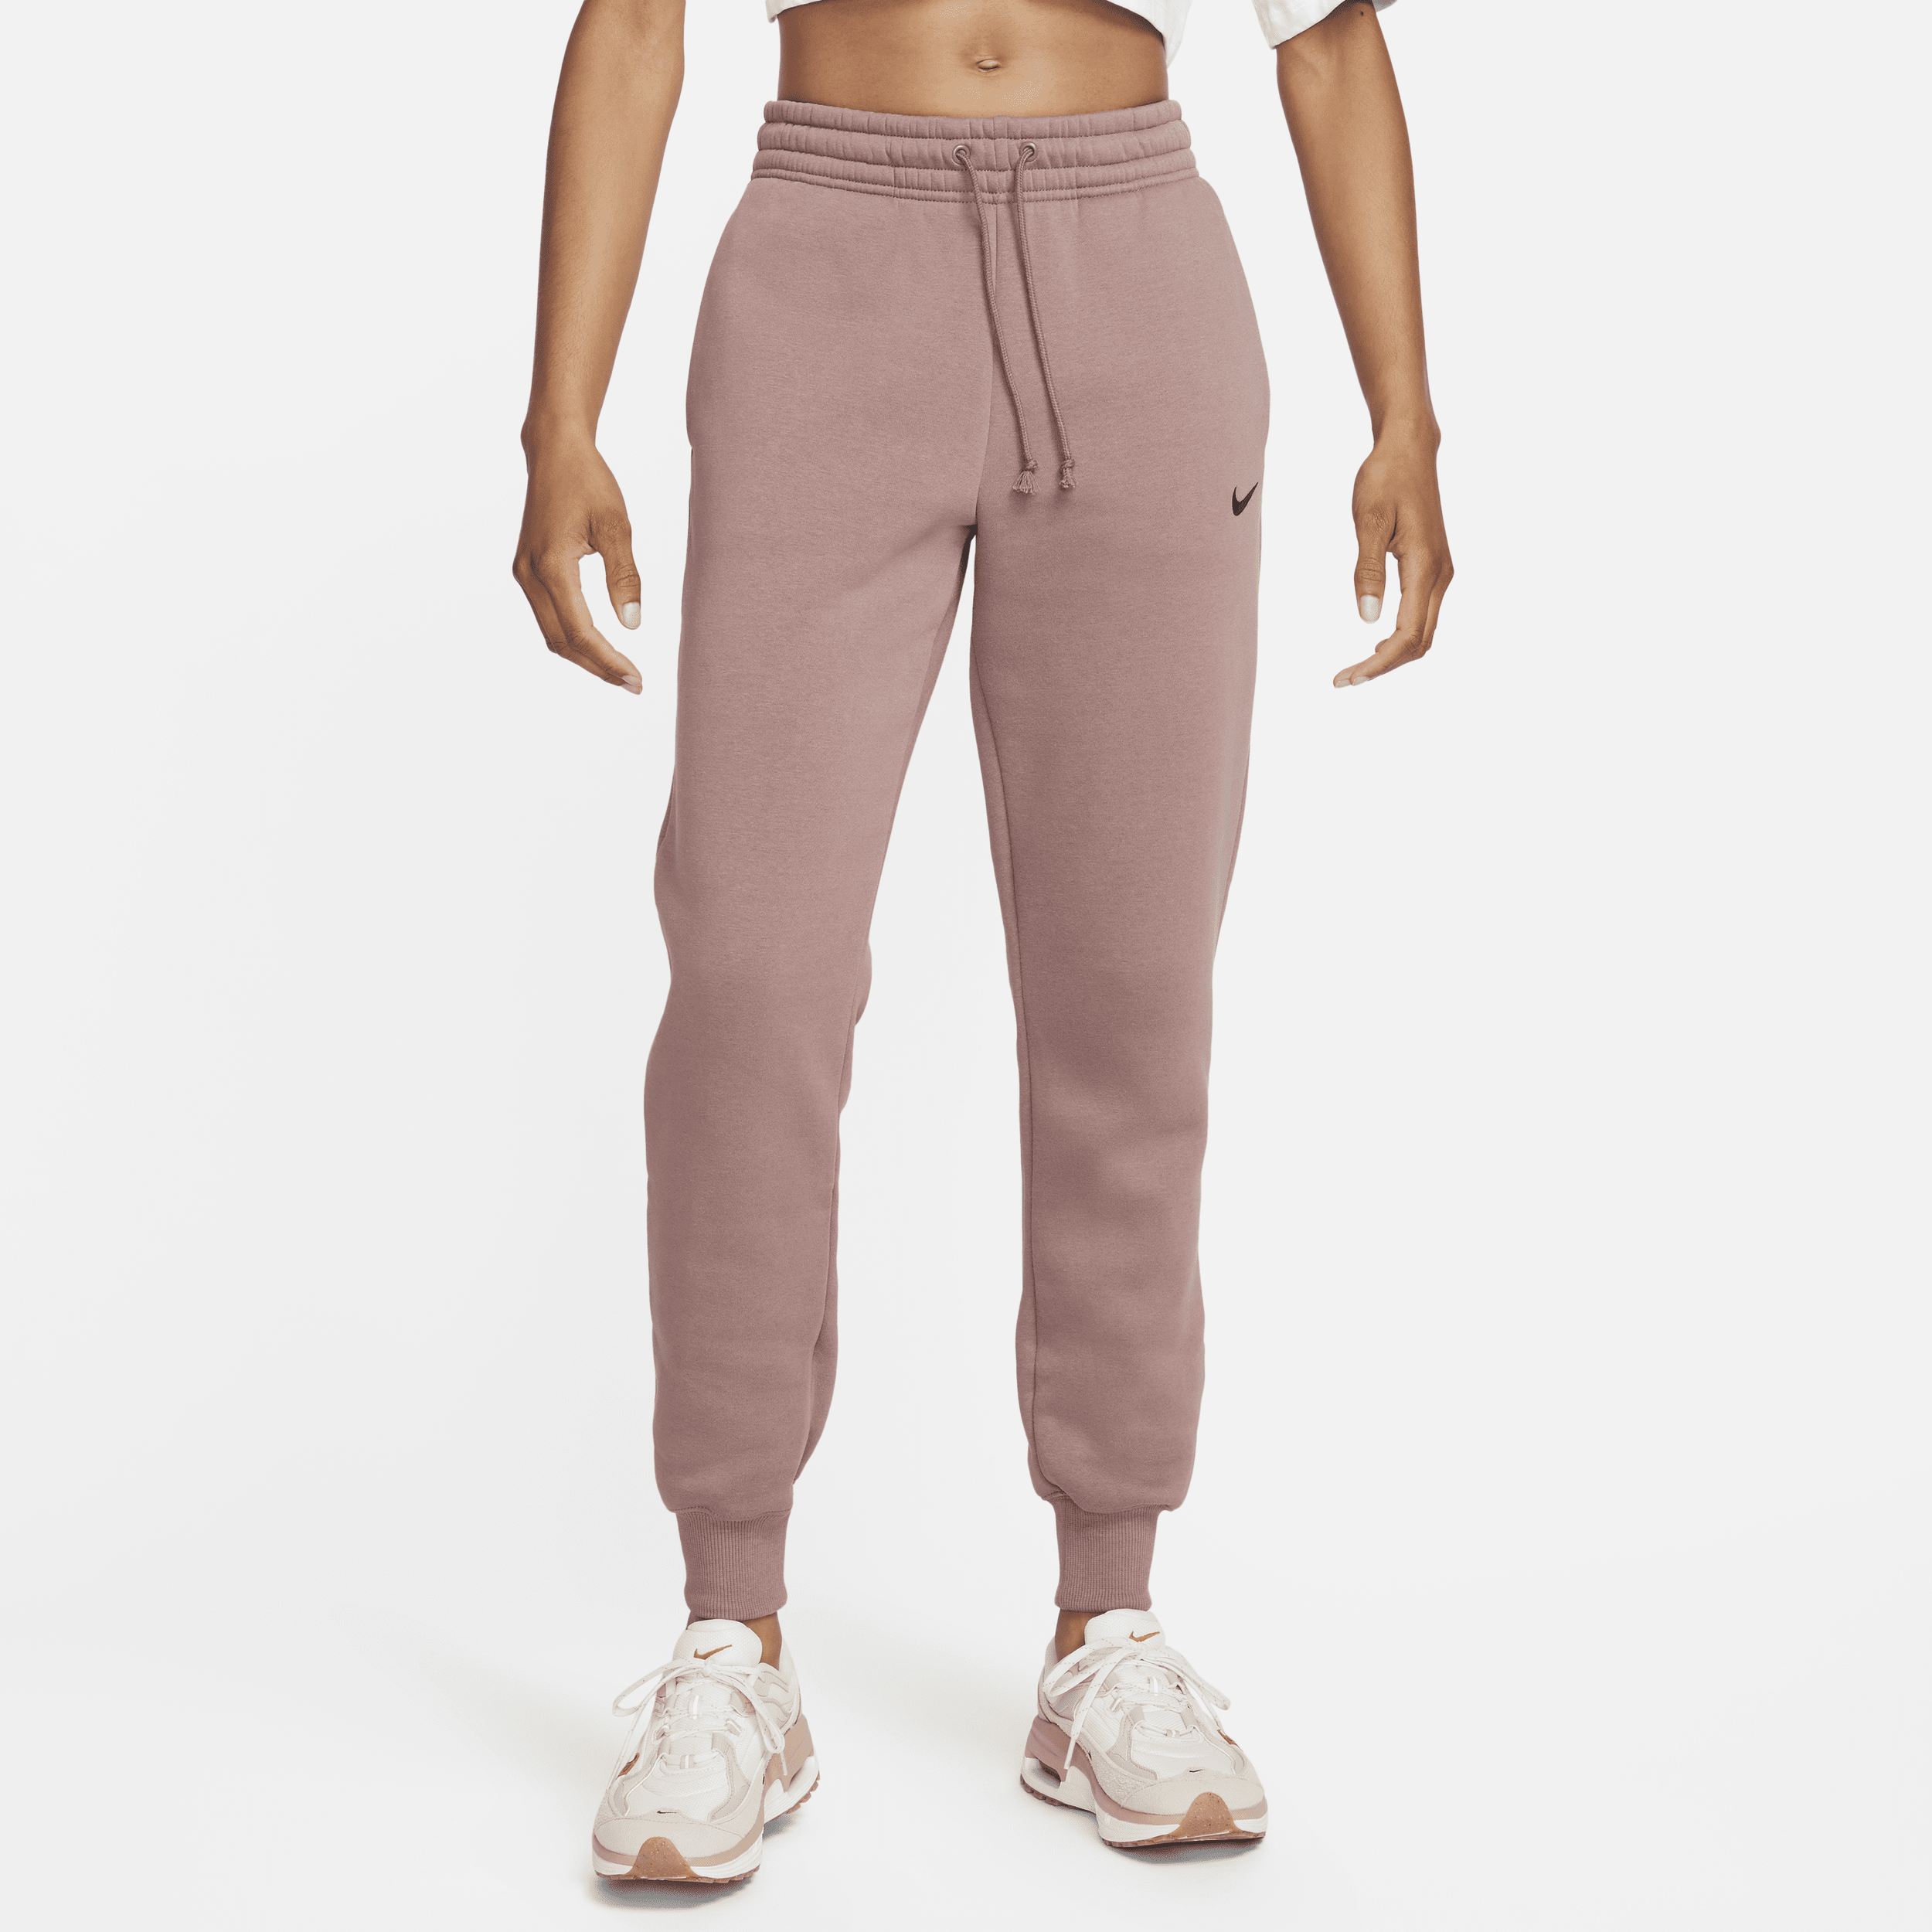 Nike Sportswear Phoenix Fleece joggingbroek met halfhoge taille voor dames - Paars